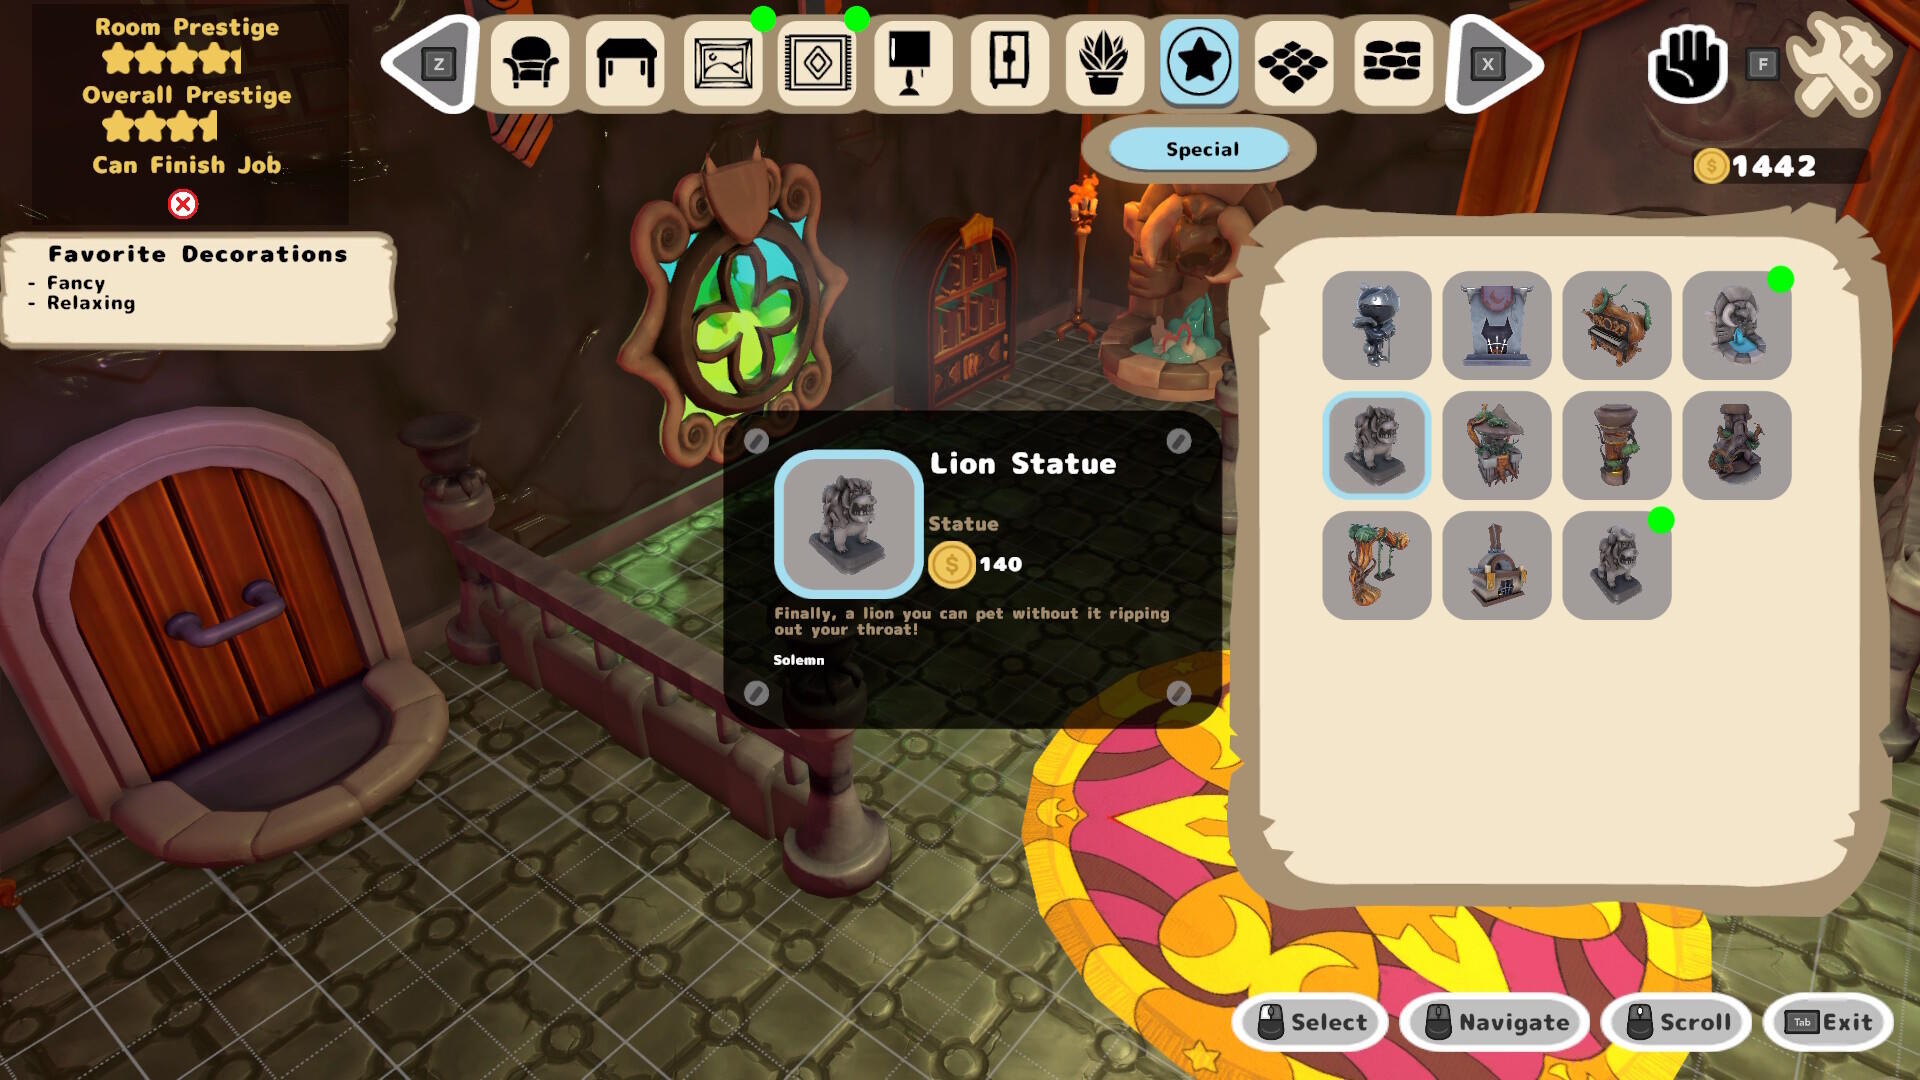 Screenshot of Cozy Dungeons